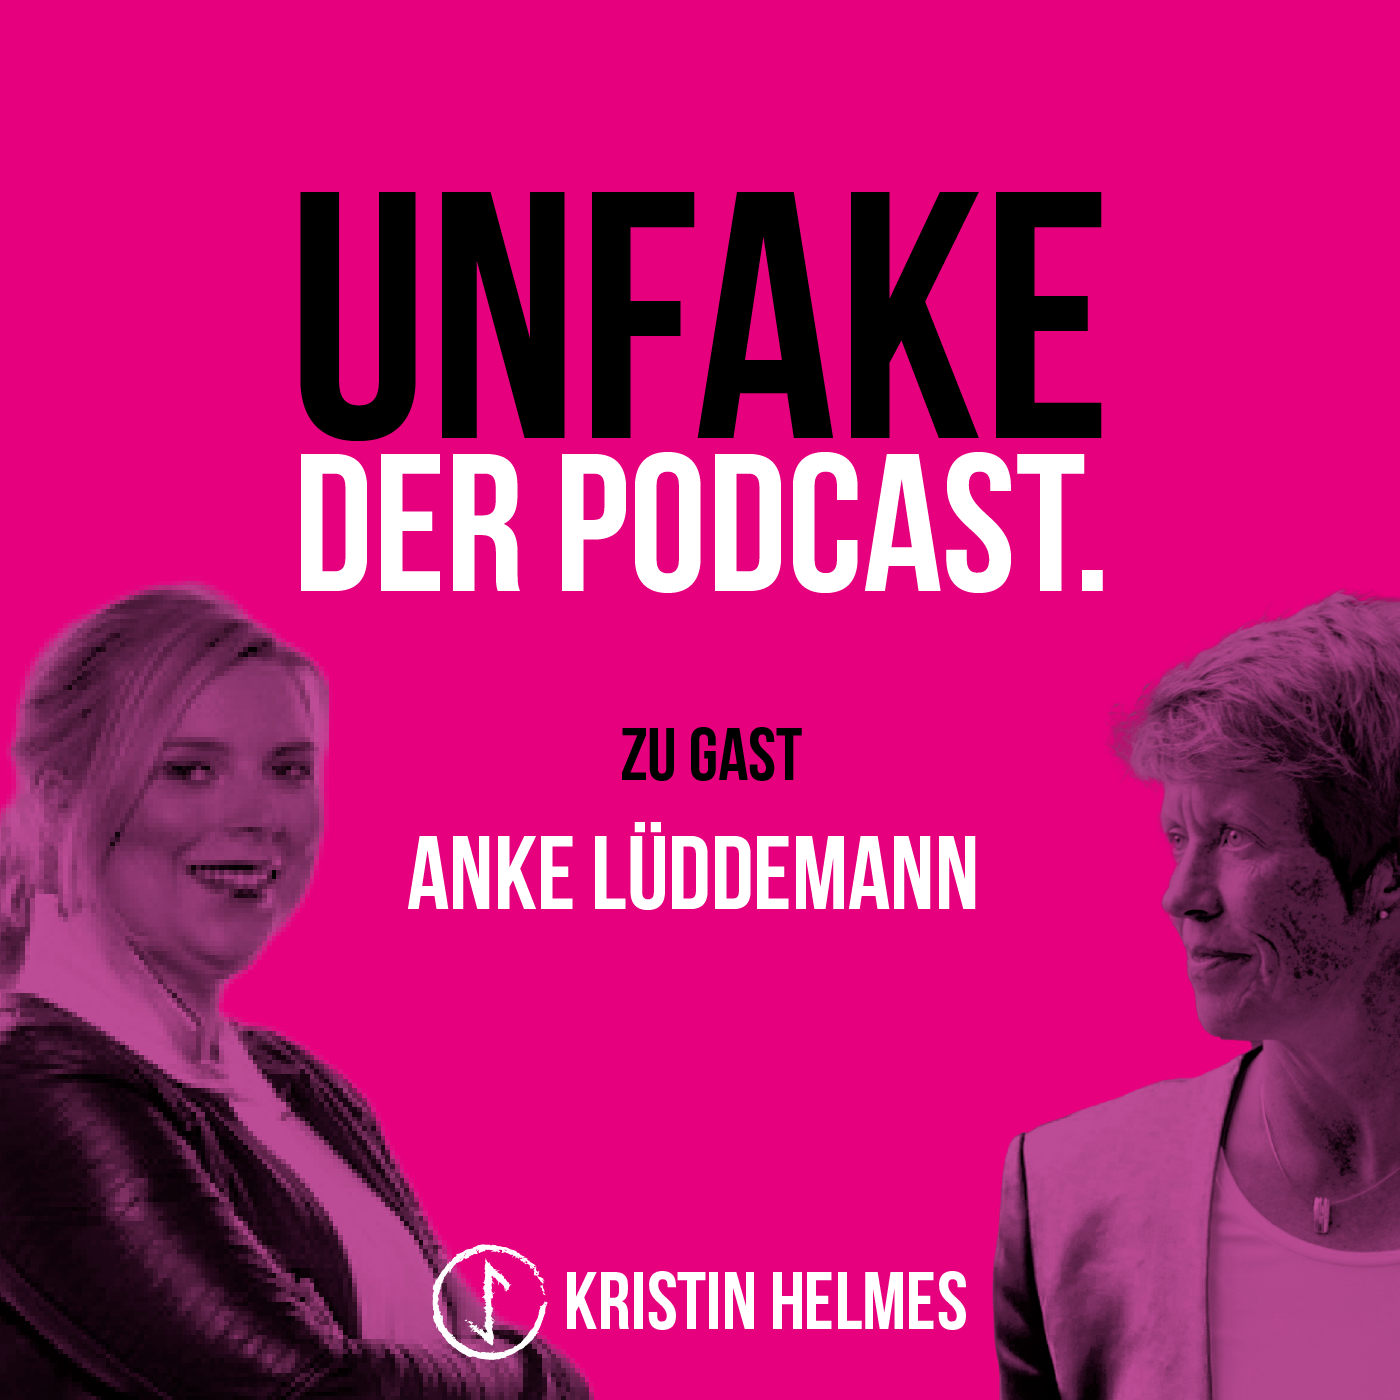 017 Unfake mit Anke Lüddemann Teil 2